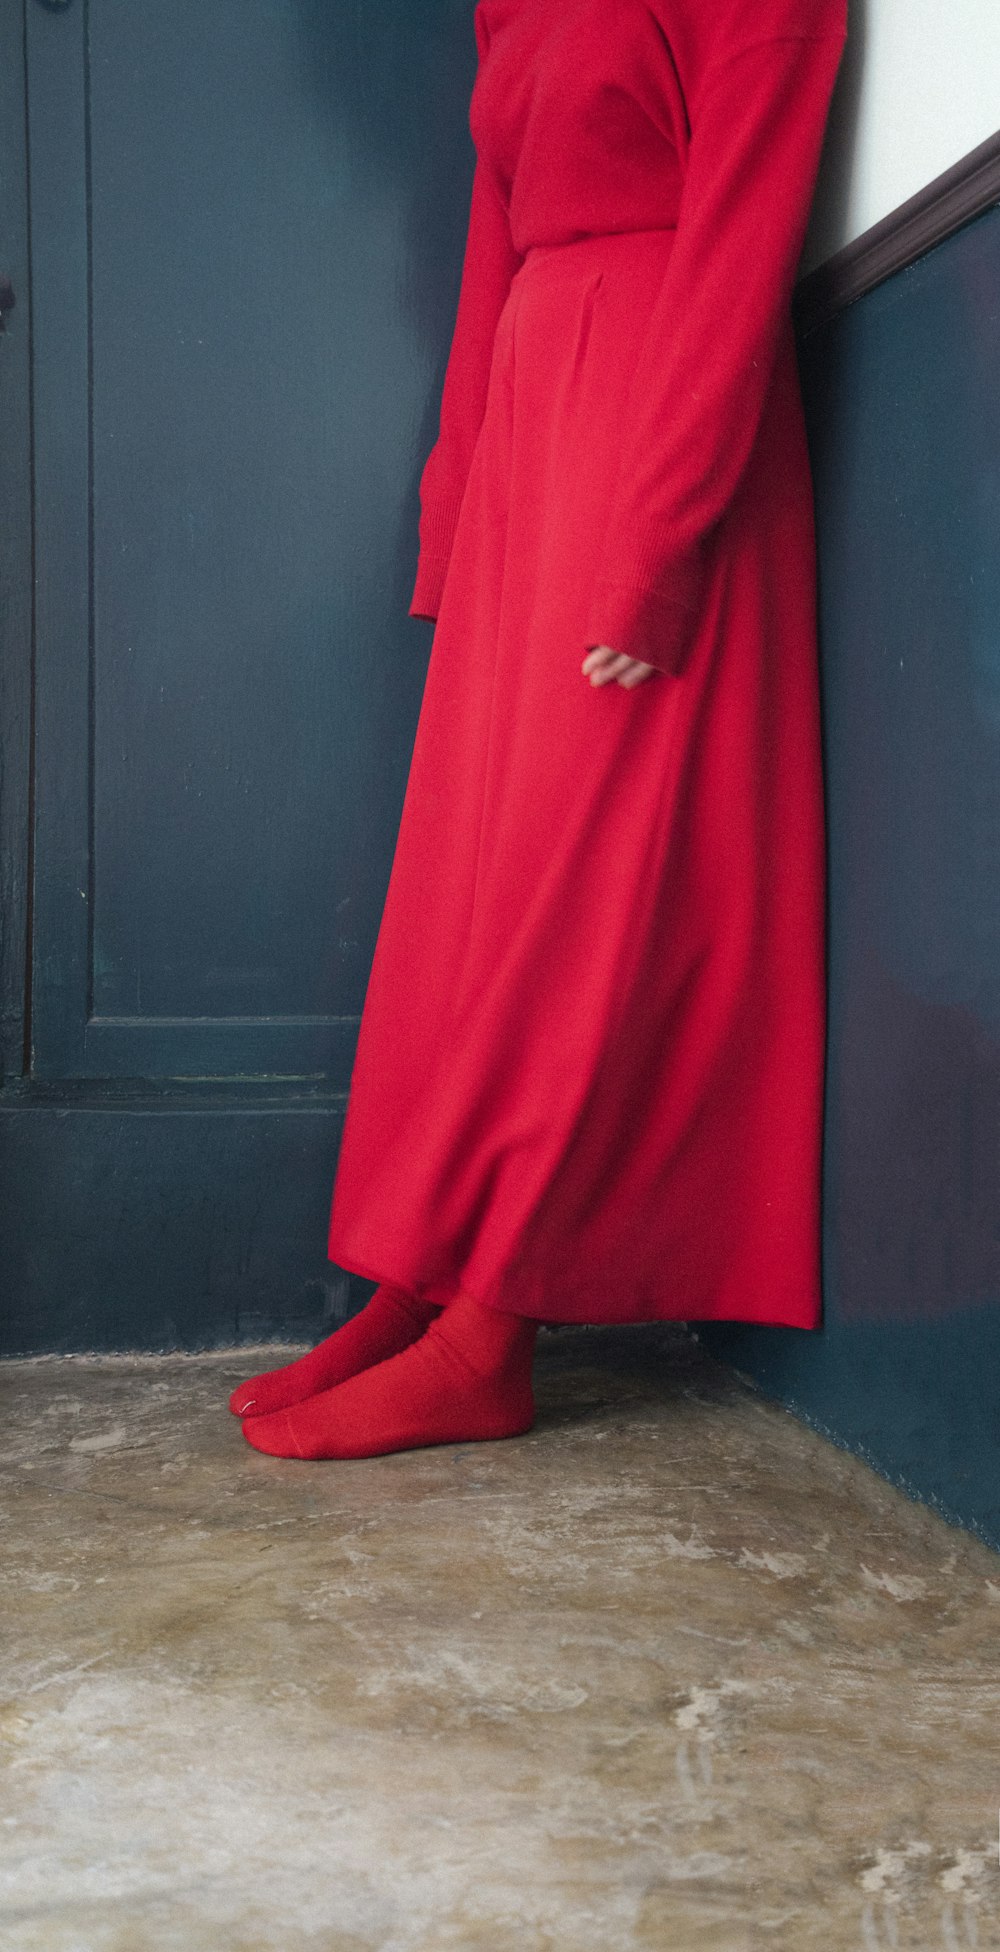 red long sleeve dress on brown wooden door